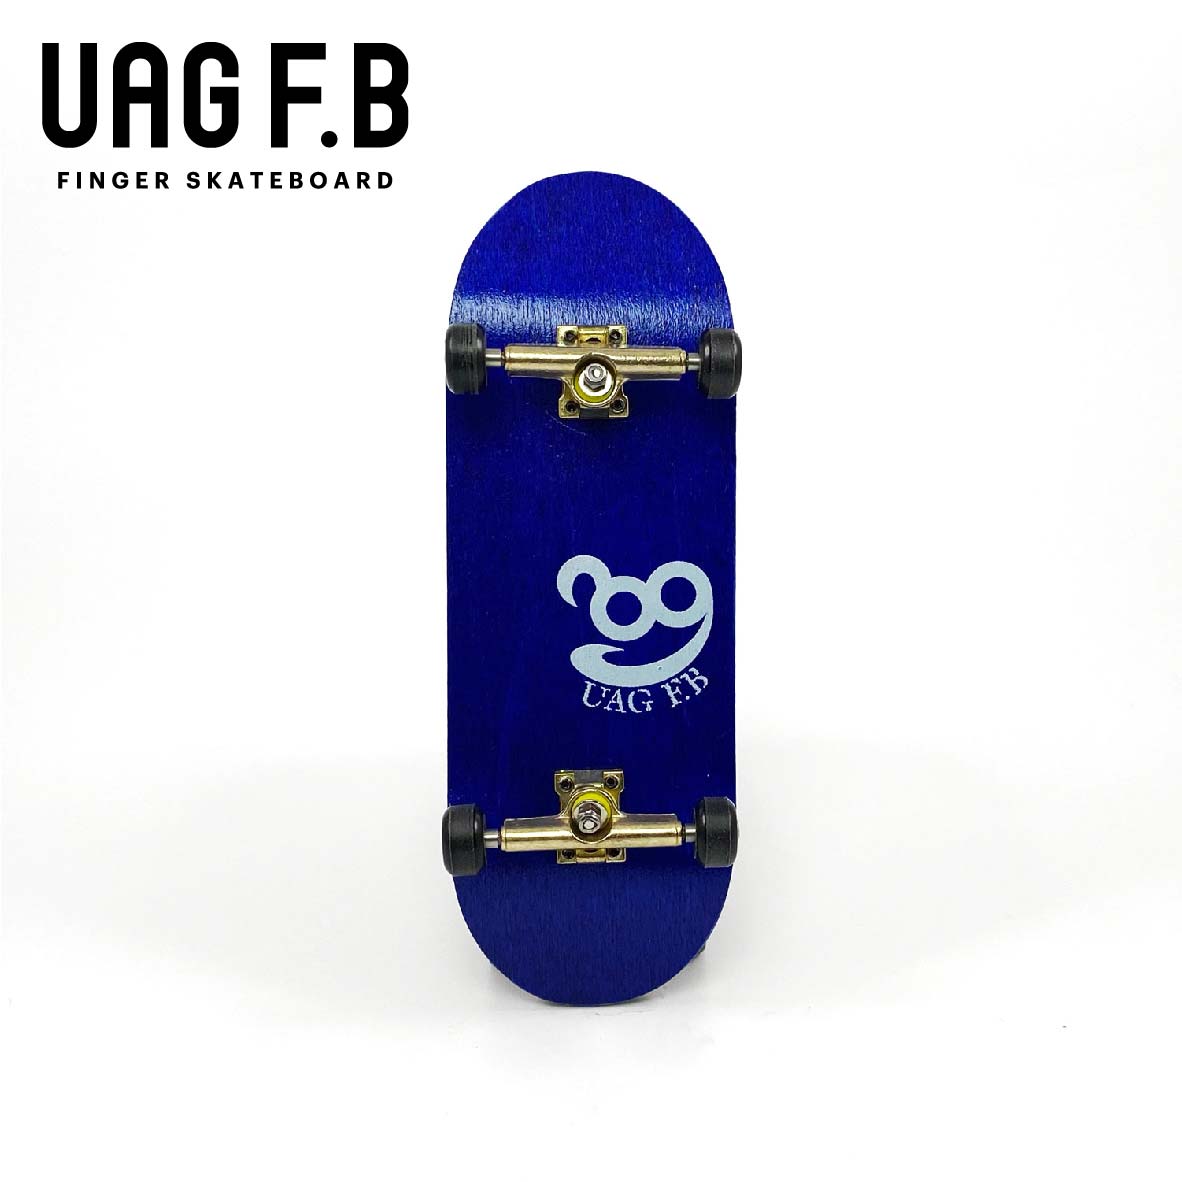 これから始めたい方にオススメ 価格とクオリティーにこだわったUAG F.Bの定番モデル UAG F.B 《UAG コンプリート》 -slim 指スケ finger ver- skate board 素晴らしい価格 【驚きの値段で】 Blue